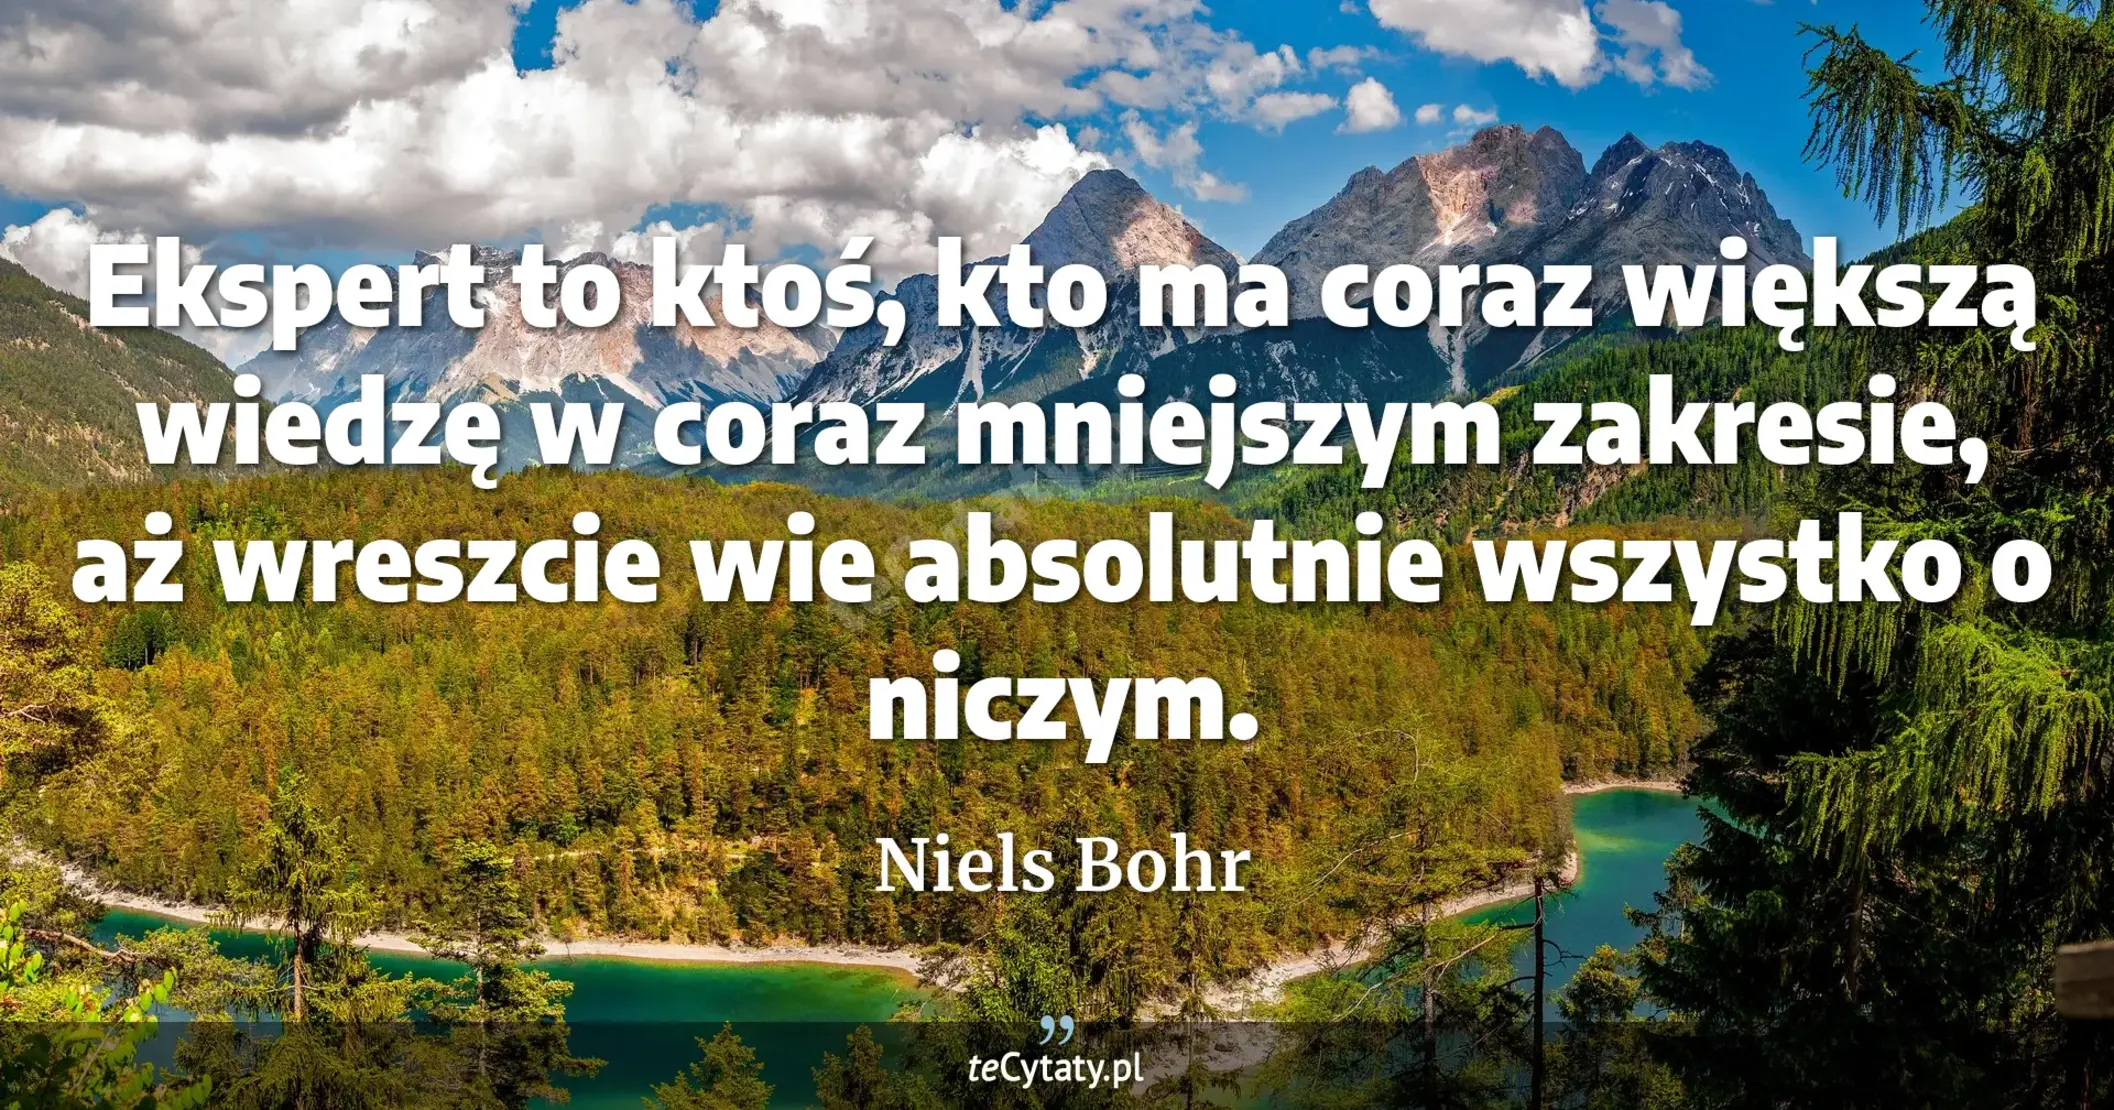 Ekspert to ktoś, kto ma coraz większą wiedzę w coraz mniejszym zakresie, aż wreszcie wie absolutnie wszystko o niczym. - Niels Bohr